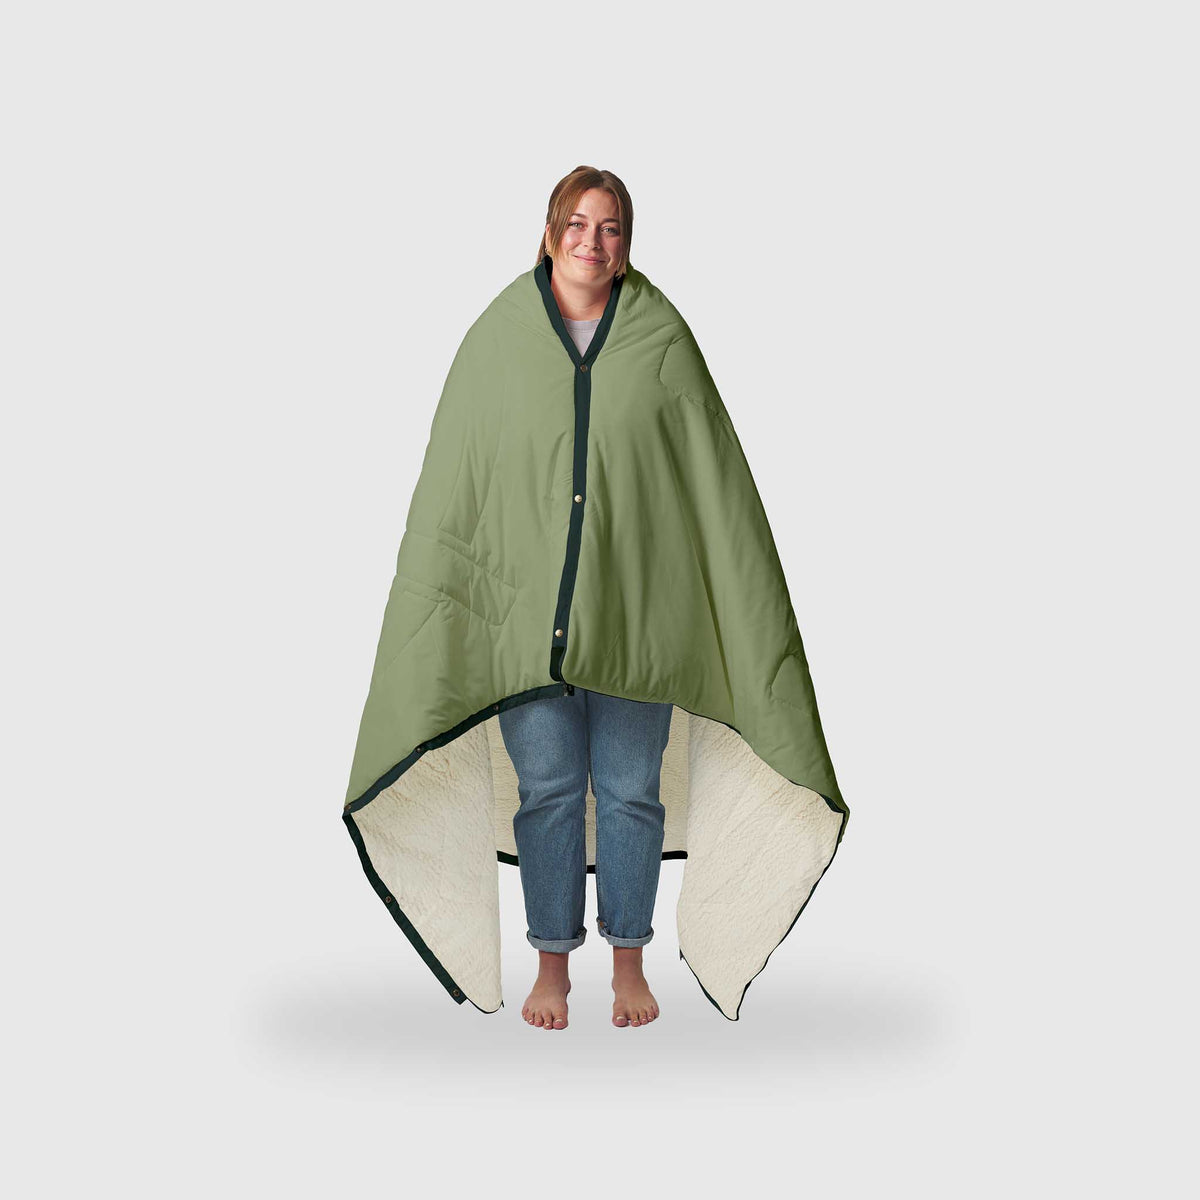 VOITED CloudTouch® Indoor/Outdoor Camping Blanket -Jasper / Tree Green